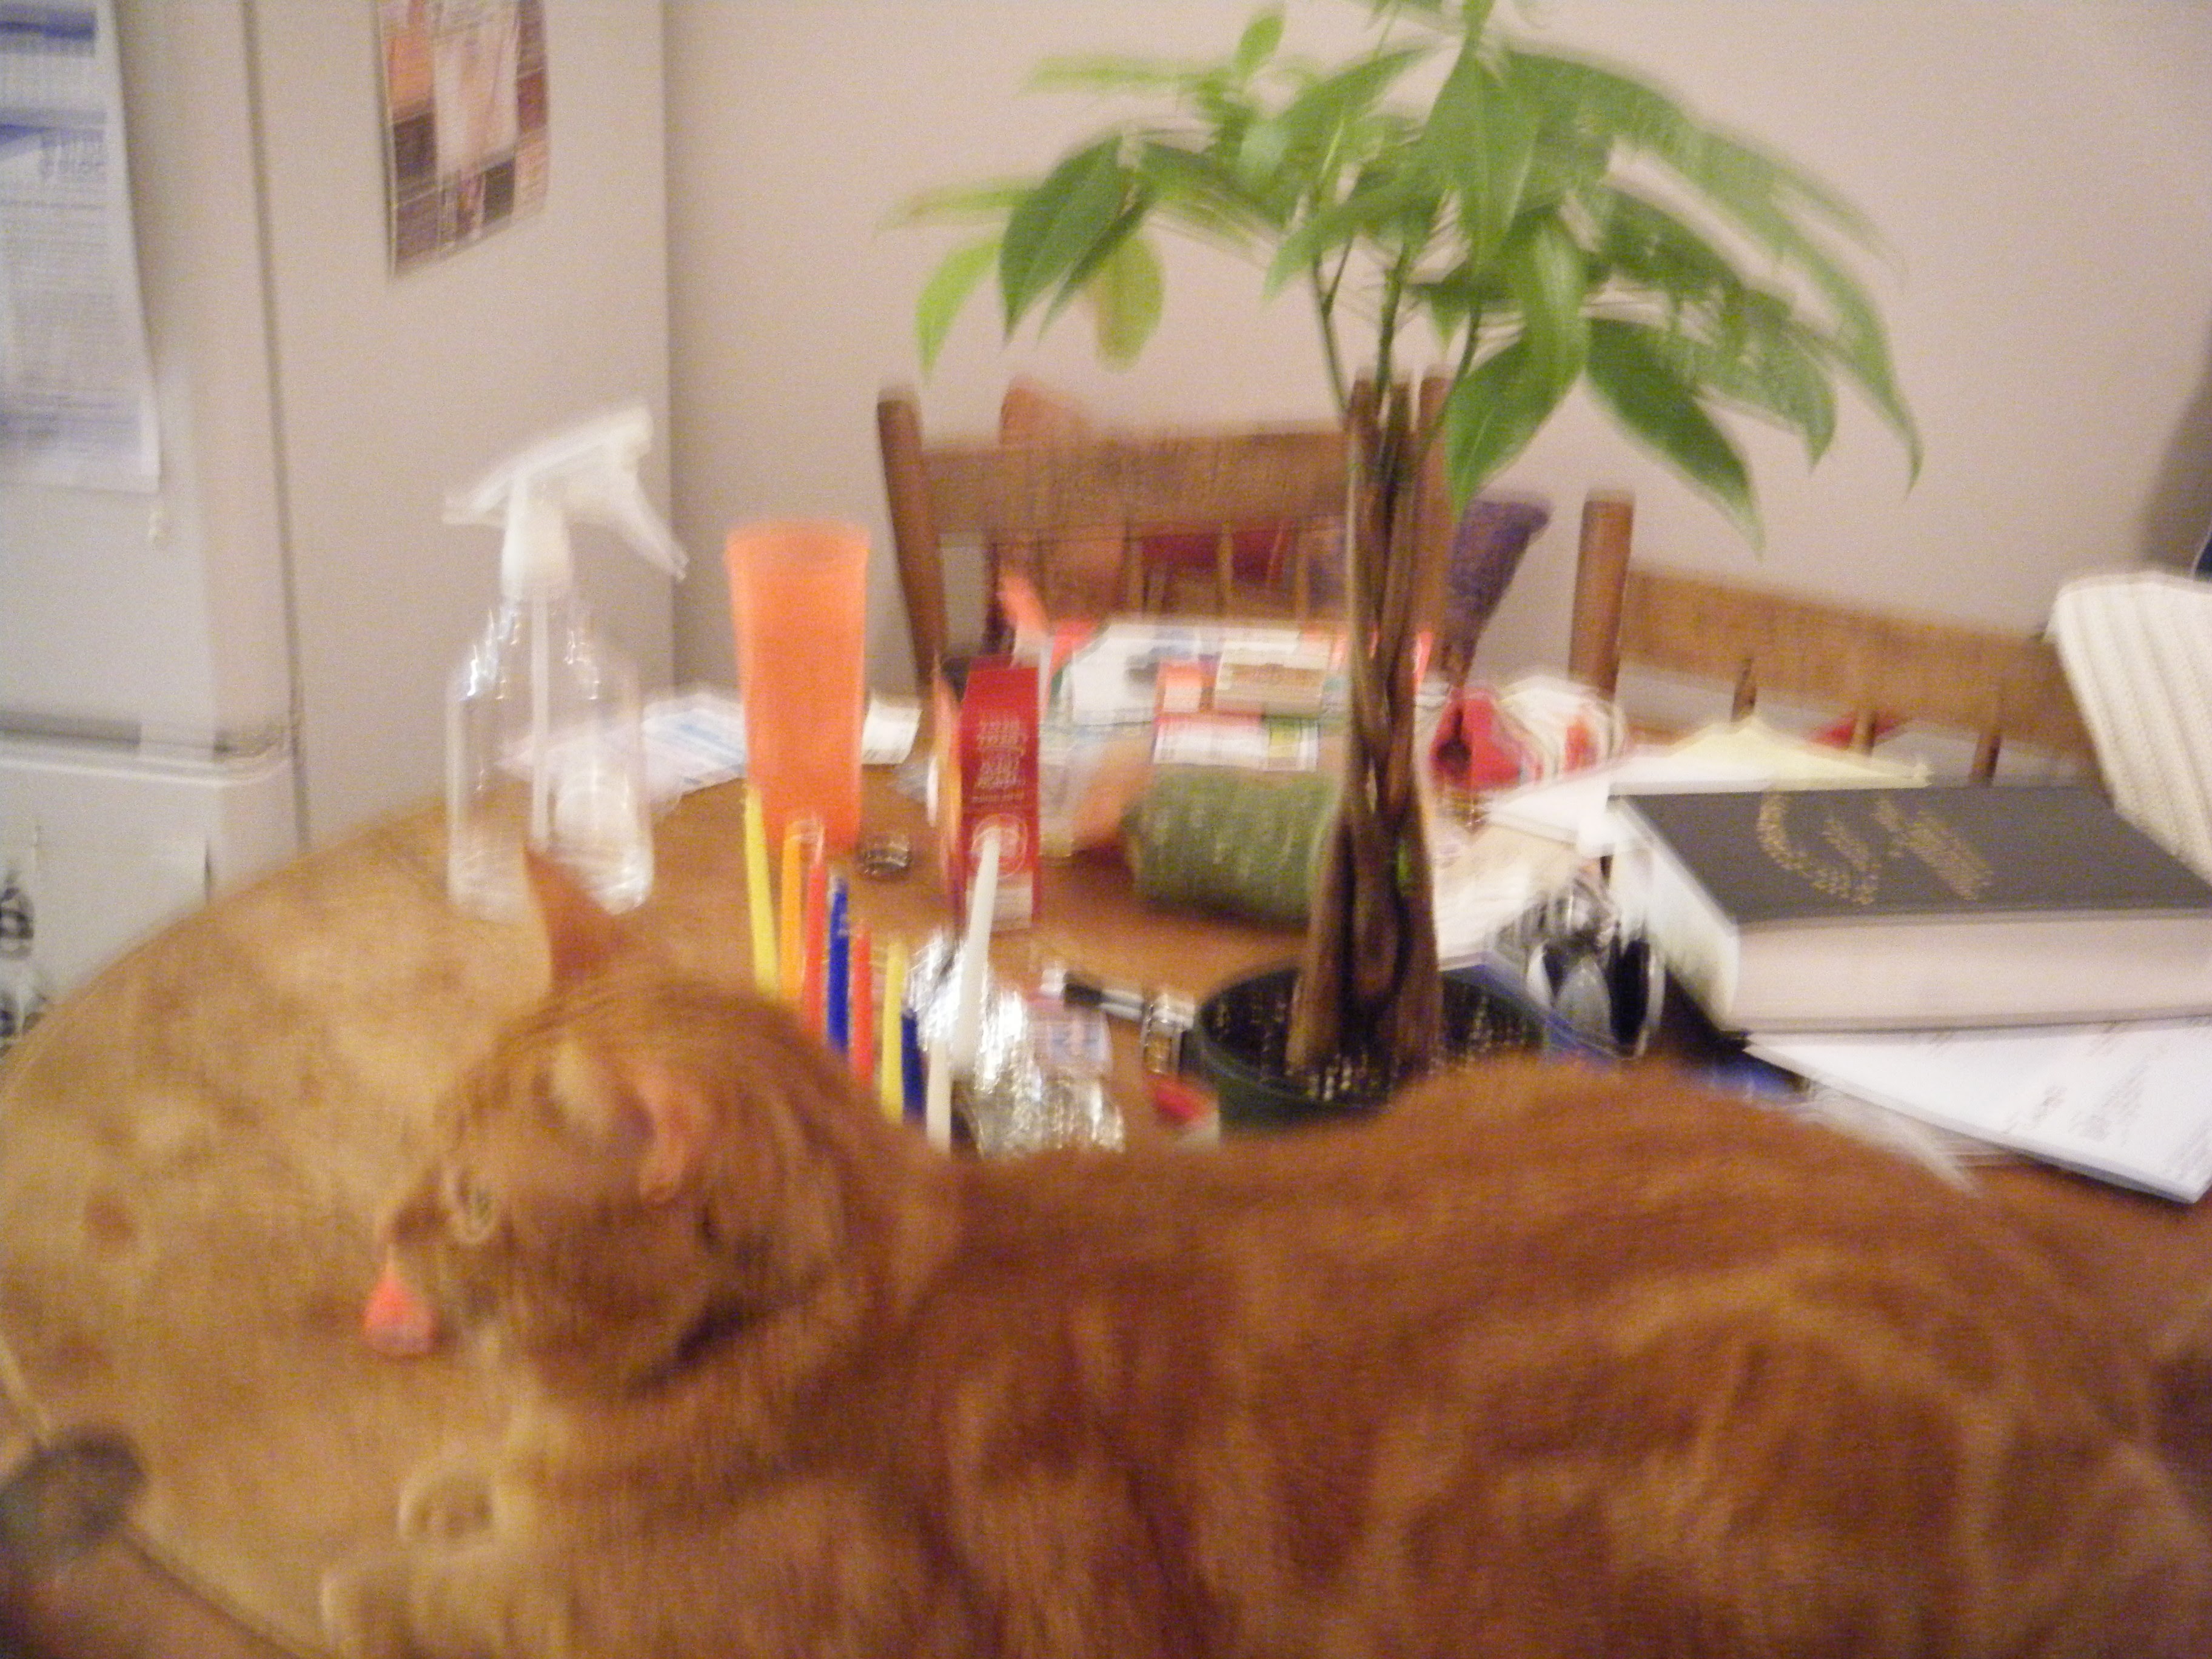 Clément le chat est allongé sur la table, à côté du money tree.